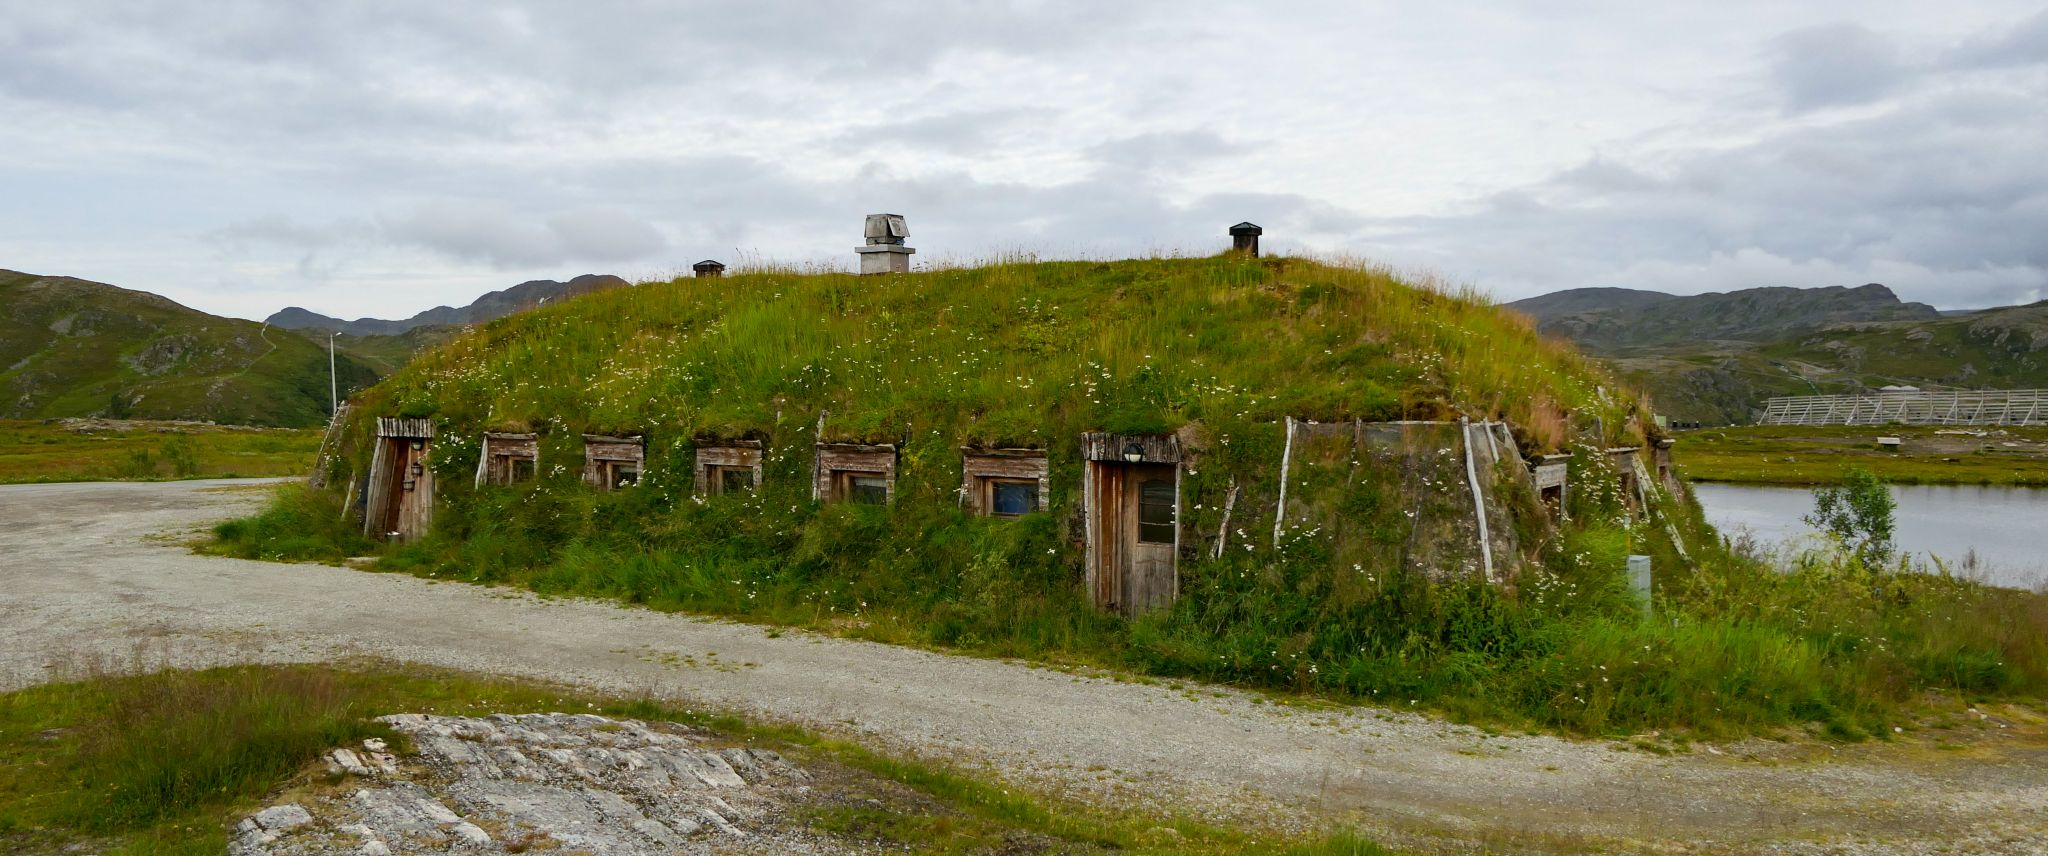 Viele Häuser in Norwegen haben ein hübsches Grasdach. Die 'echten' Grashäuser der Samen sind komplett grasbewachsen.